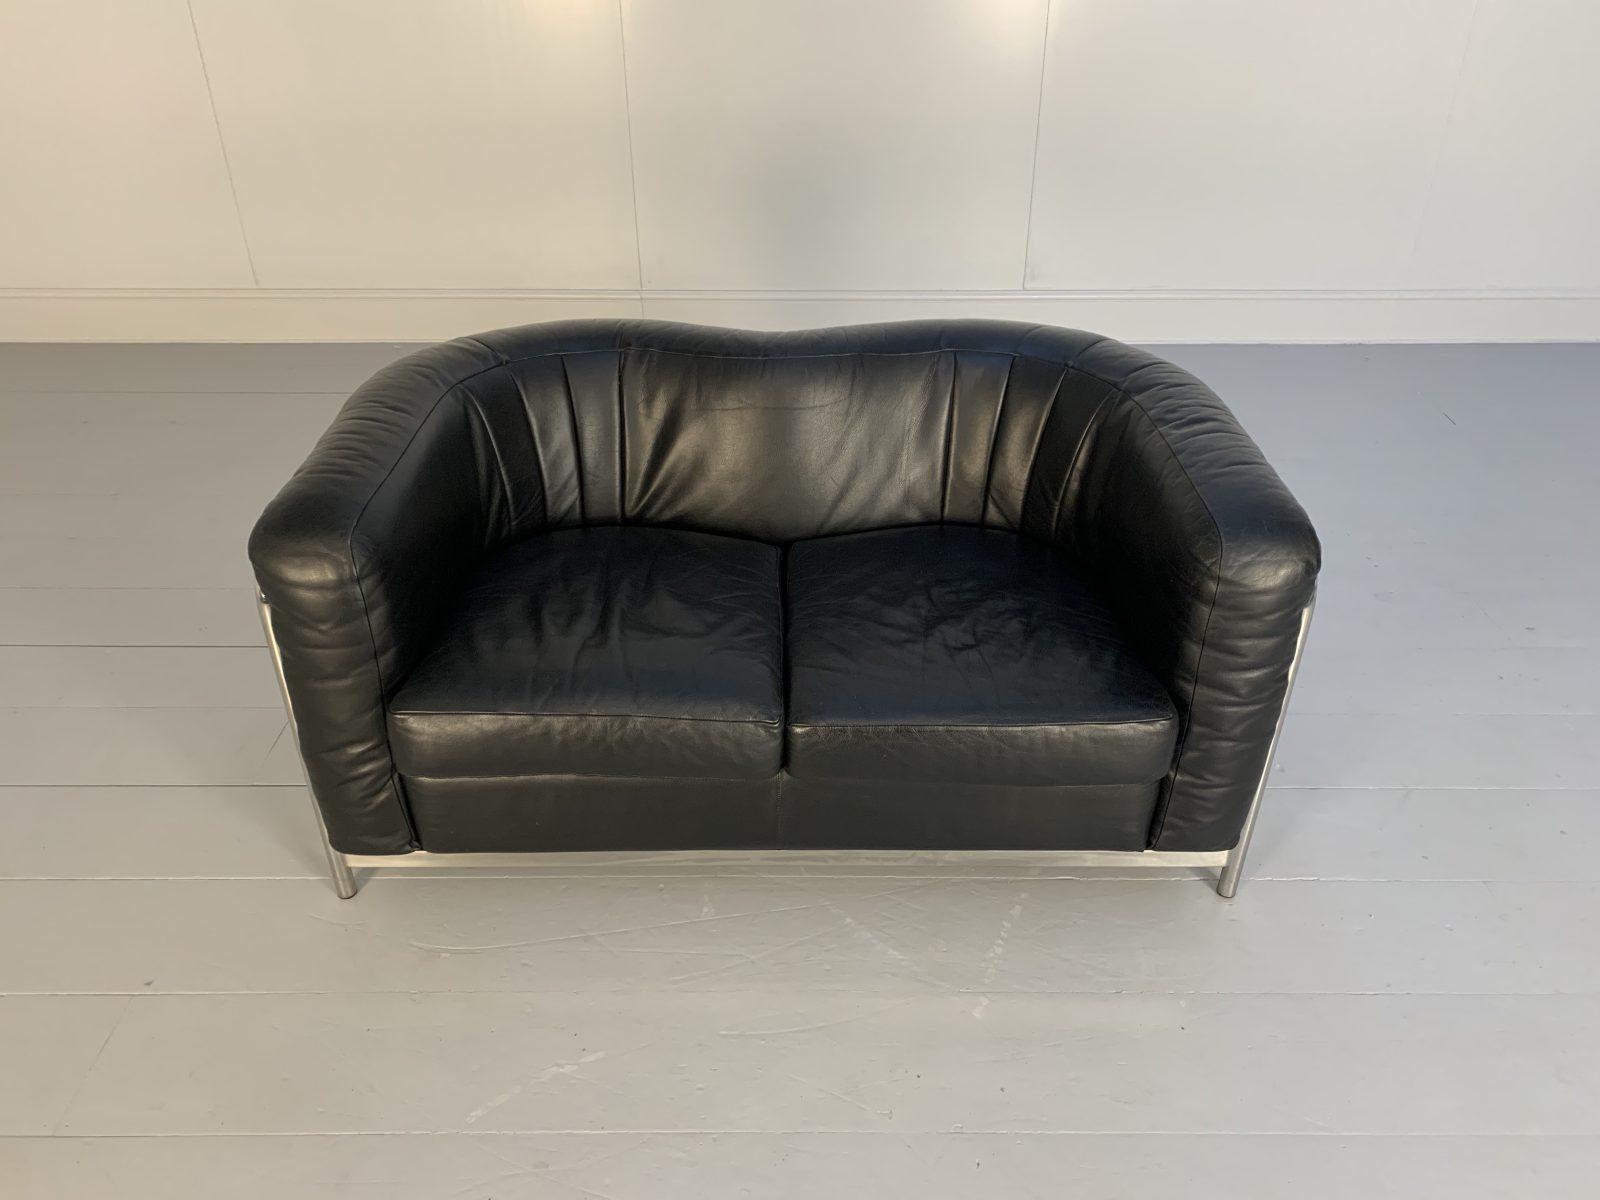 Zanotta “Onda” Sofa – 2-Seat – in Black “Scozia” Leather and Chrome In Good Condition For Sale In Barrowford, GB